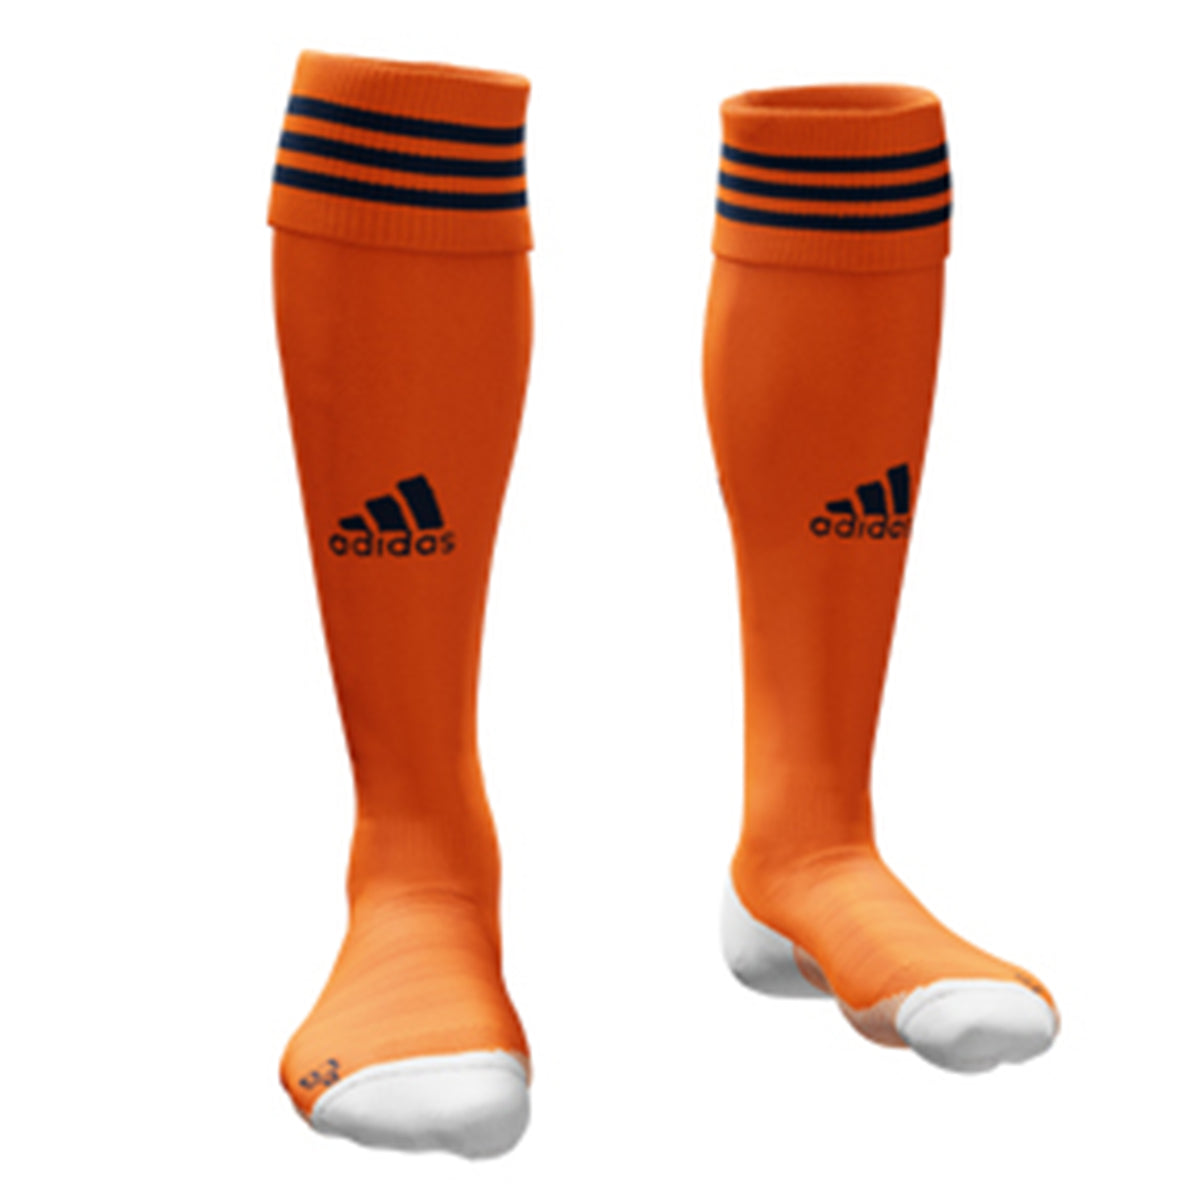 Wycombe HC Away Socks: Orange